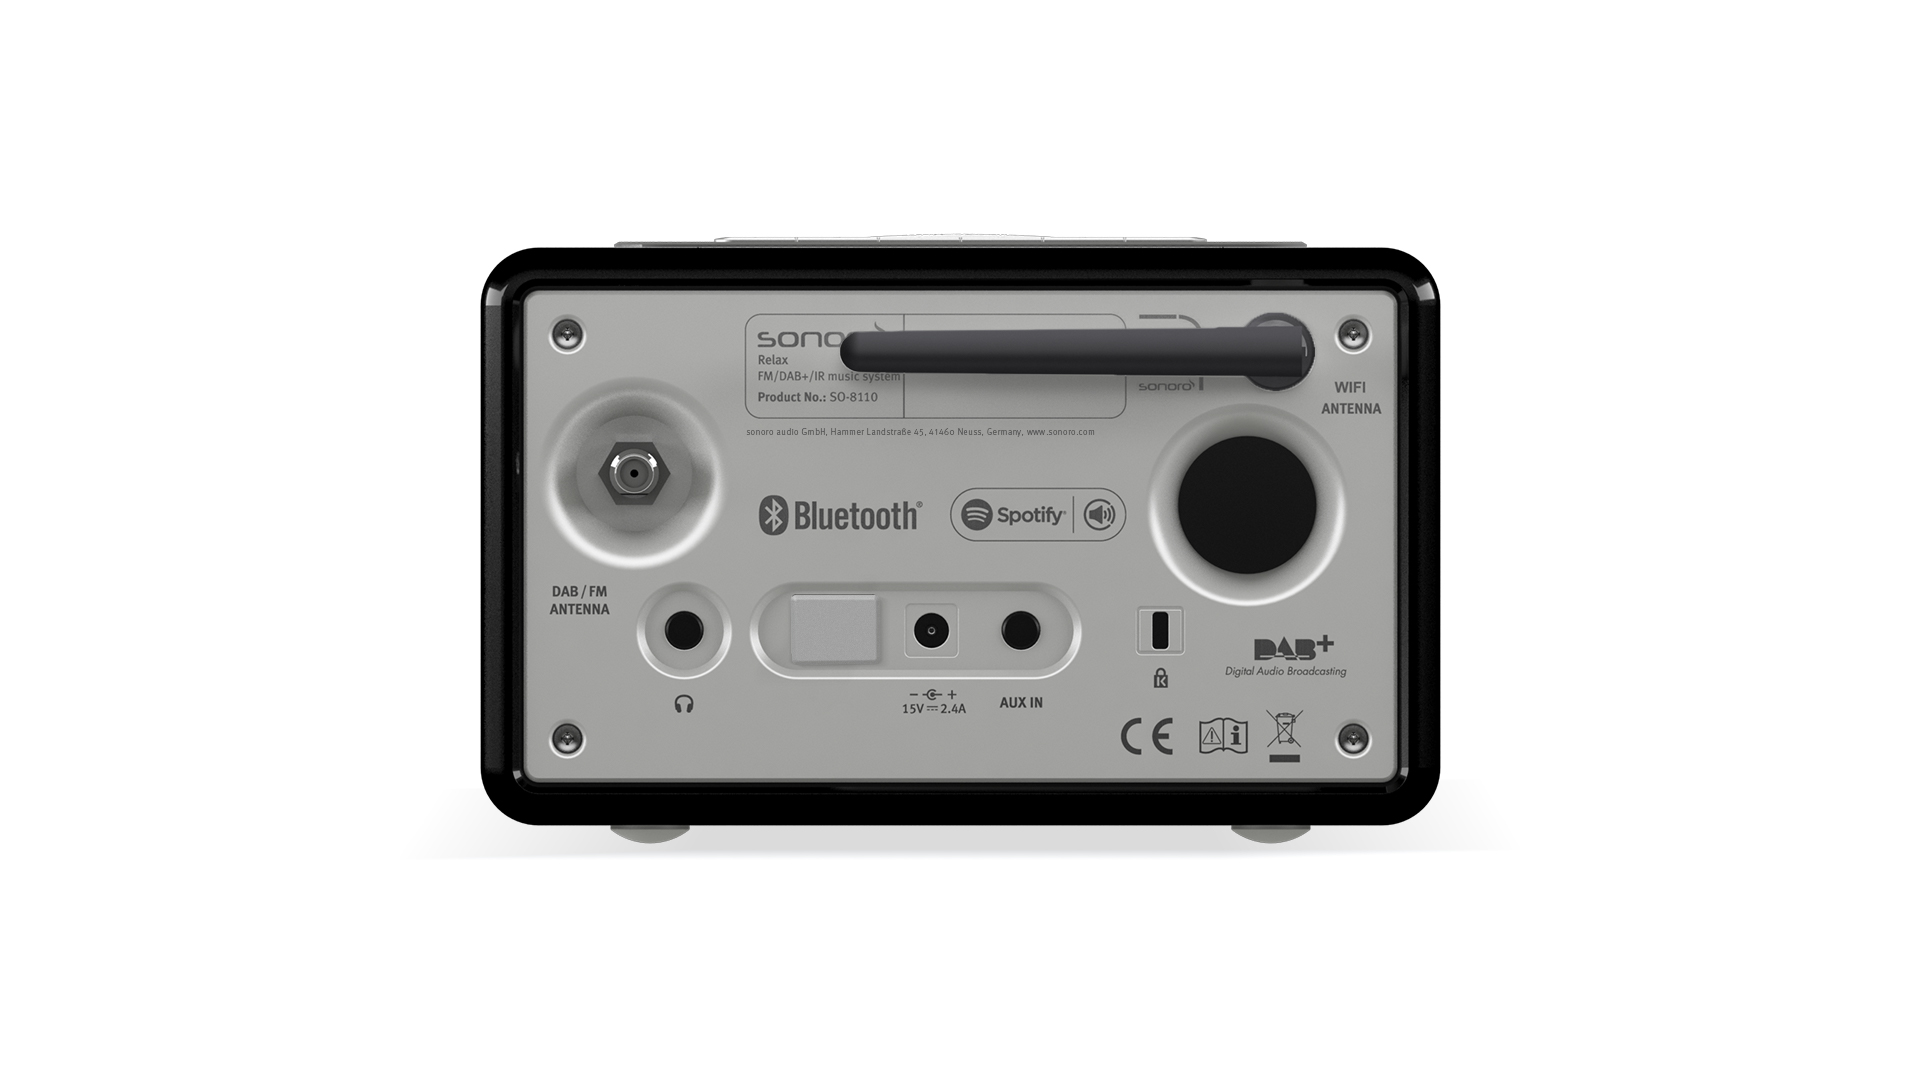 Radio réveil numérique Portable DAB + FM avec fonction minuterie de  sommeil, Radio stéréo à piles